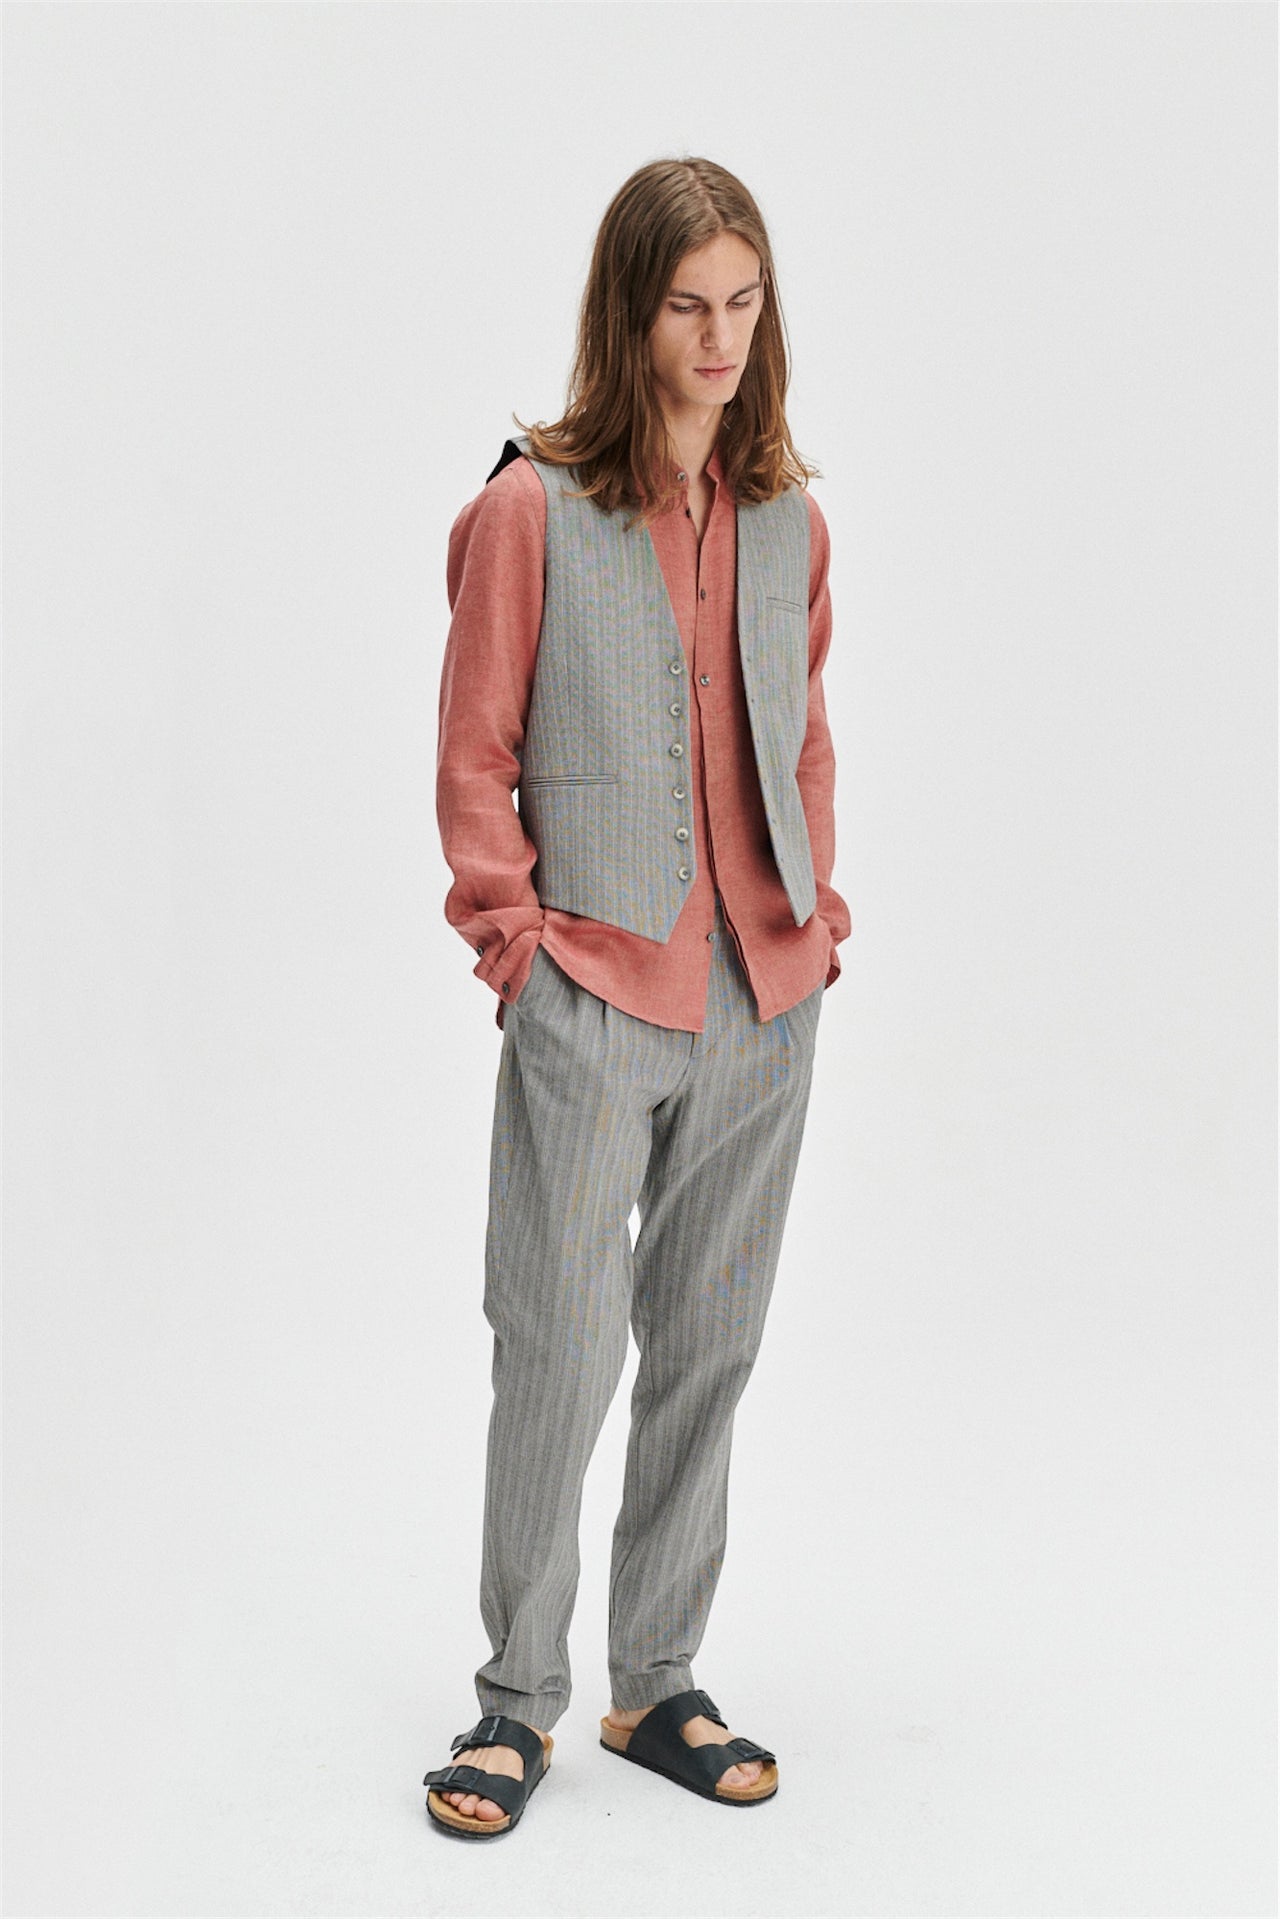 Vest in a Grey Herringbone and Subtle Blue Stripe Fine Italian Cotton Crepe by Bonotto